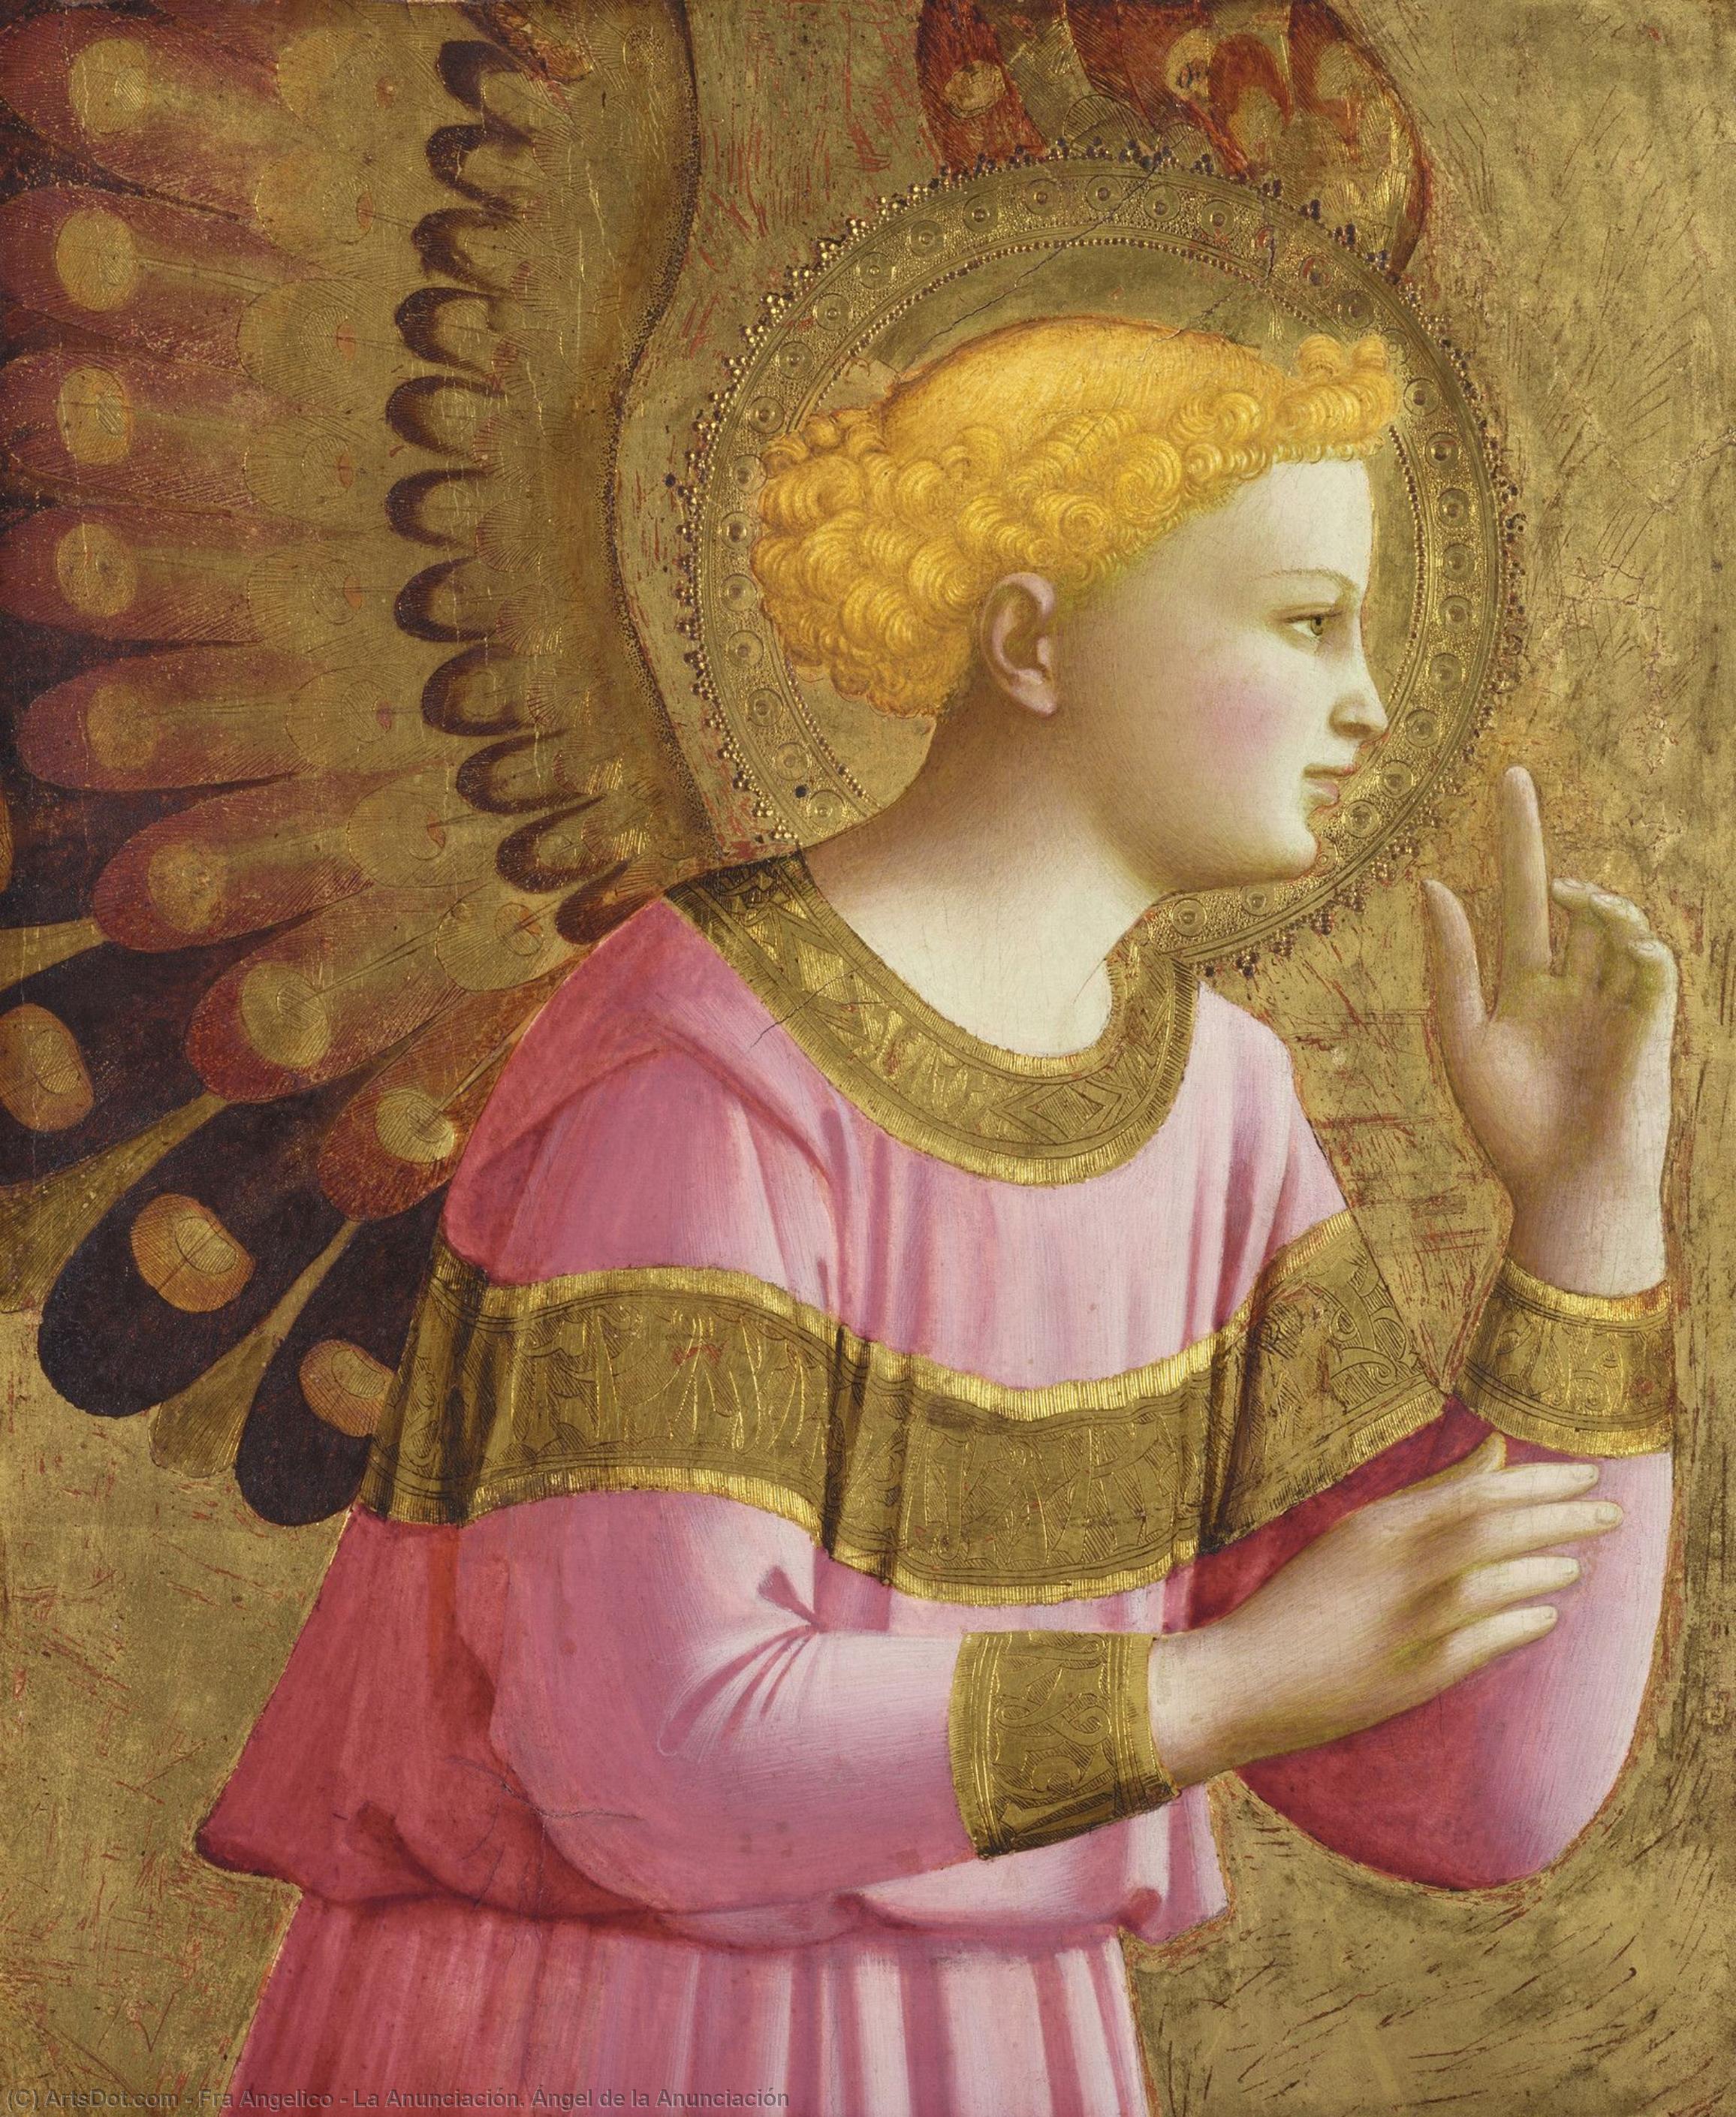 WikiOO.org - Encyclopedia of Fine Arts - Lukisan, Artwork Fra Angelico - La Anunciación. Ángel de la Anunciación